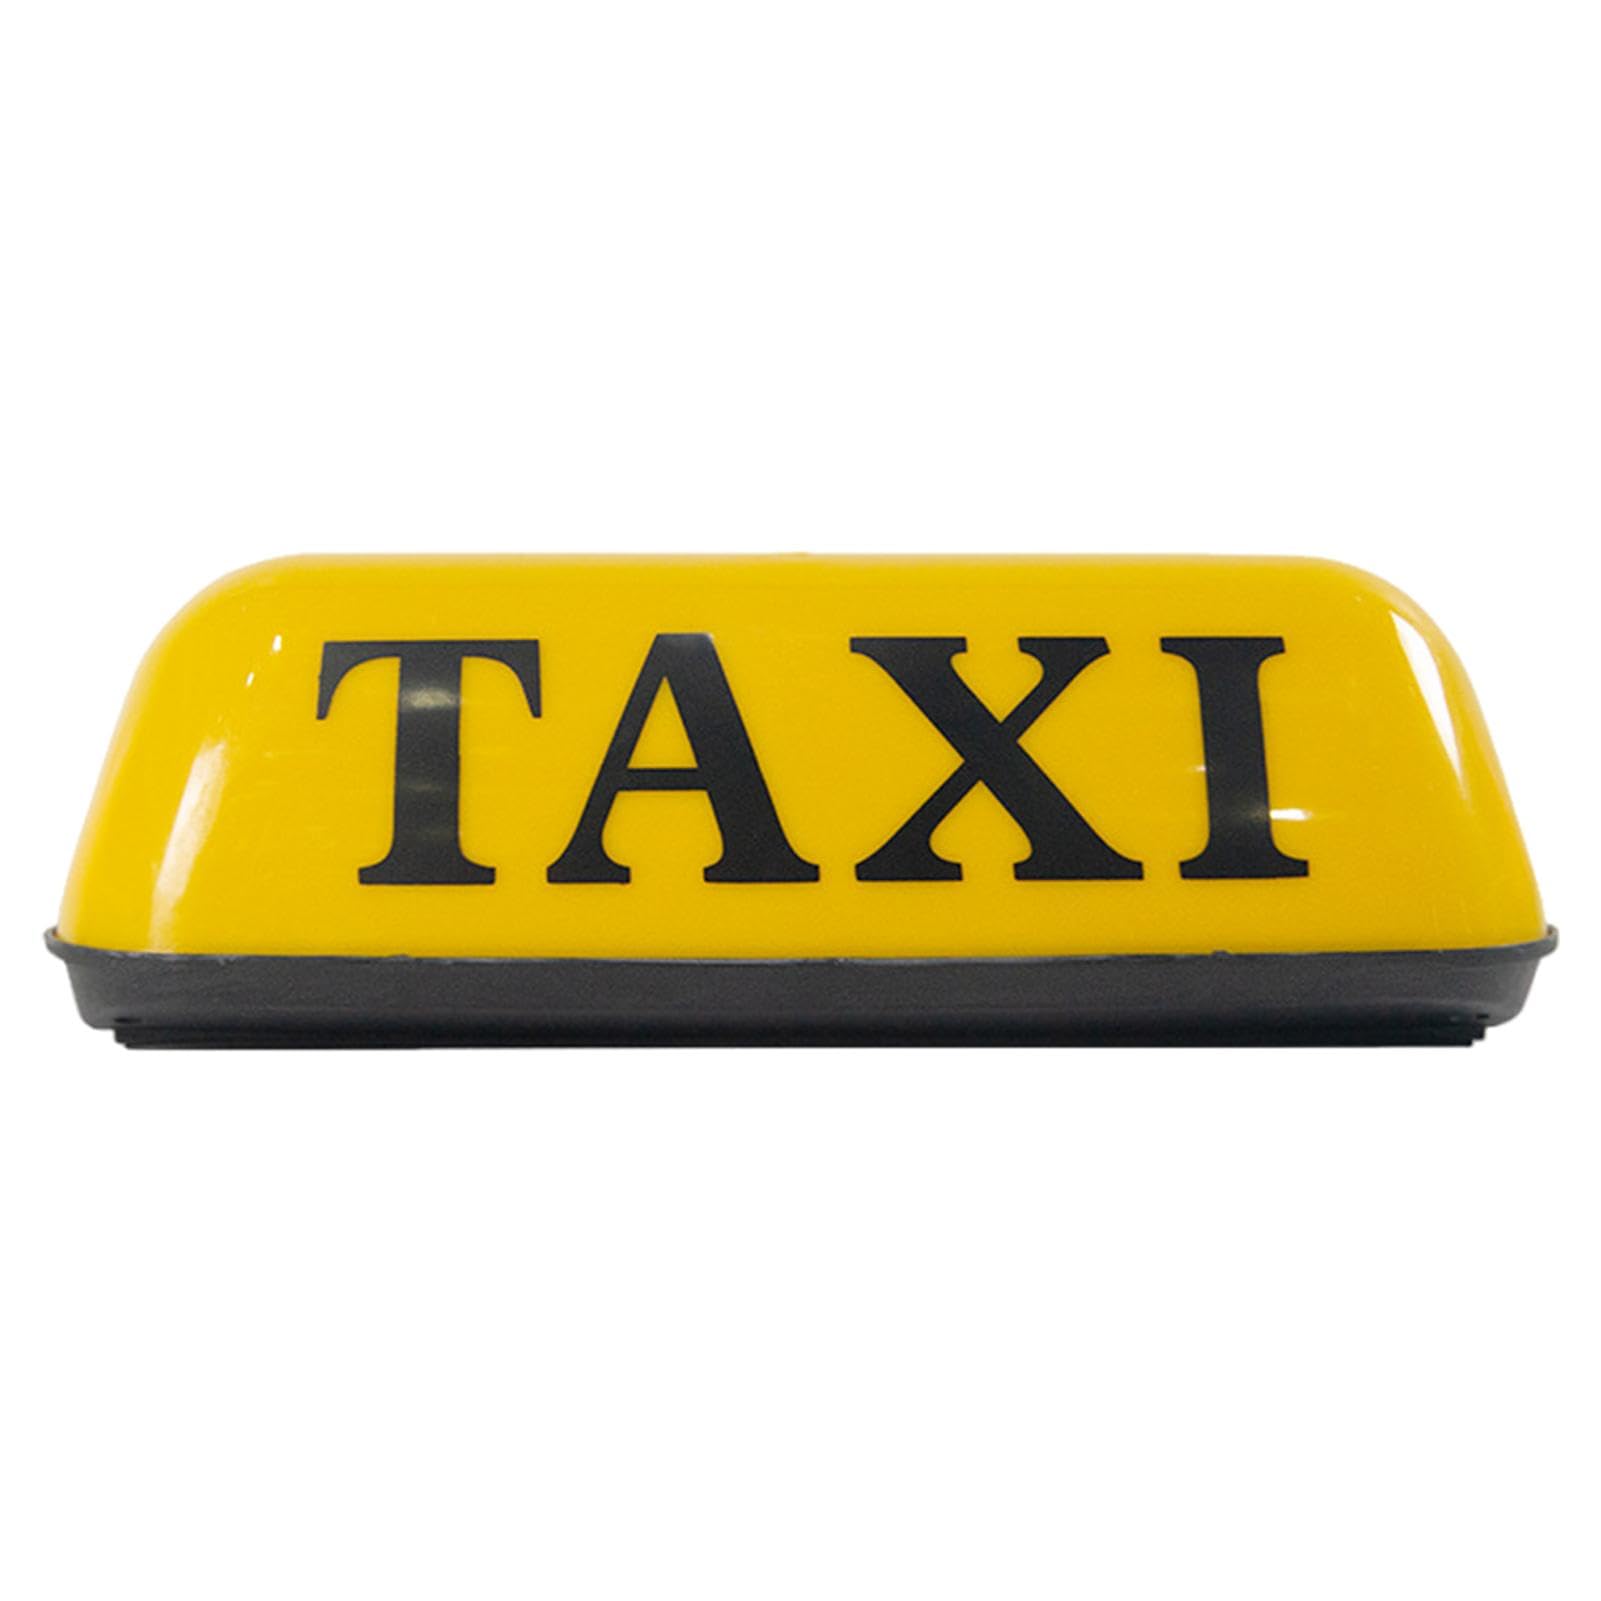 Taxi-Licht für Auto, Taxi-Leuchtschild, Taxi-Leucht-Dachlampe, Retro-Taxi-Dachschild, Taxi-Dachleuchte, Taxi-Schilder-Licht für 12 V Auto von Ysvnlmjy